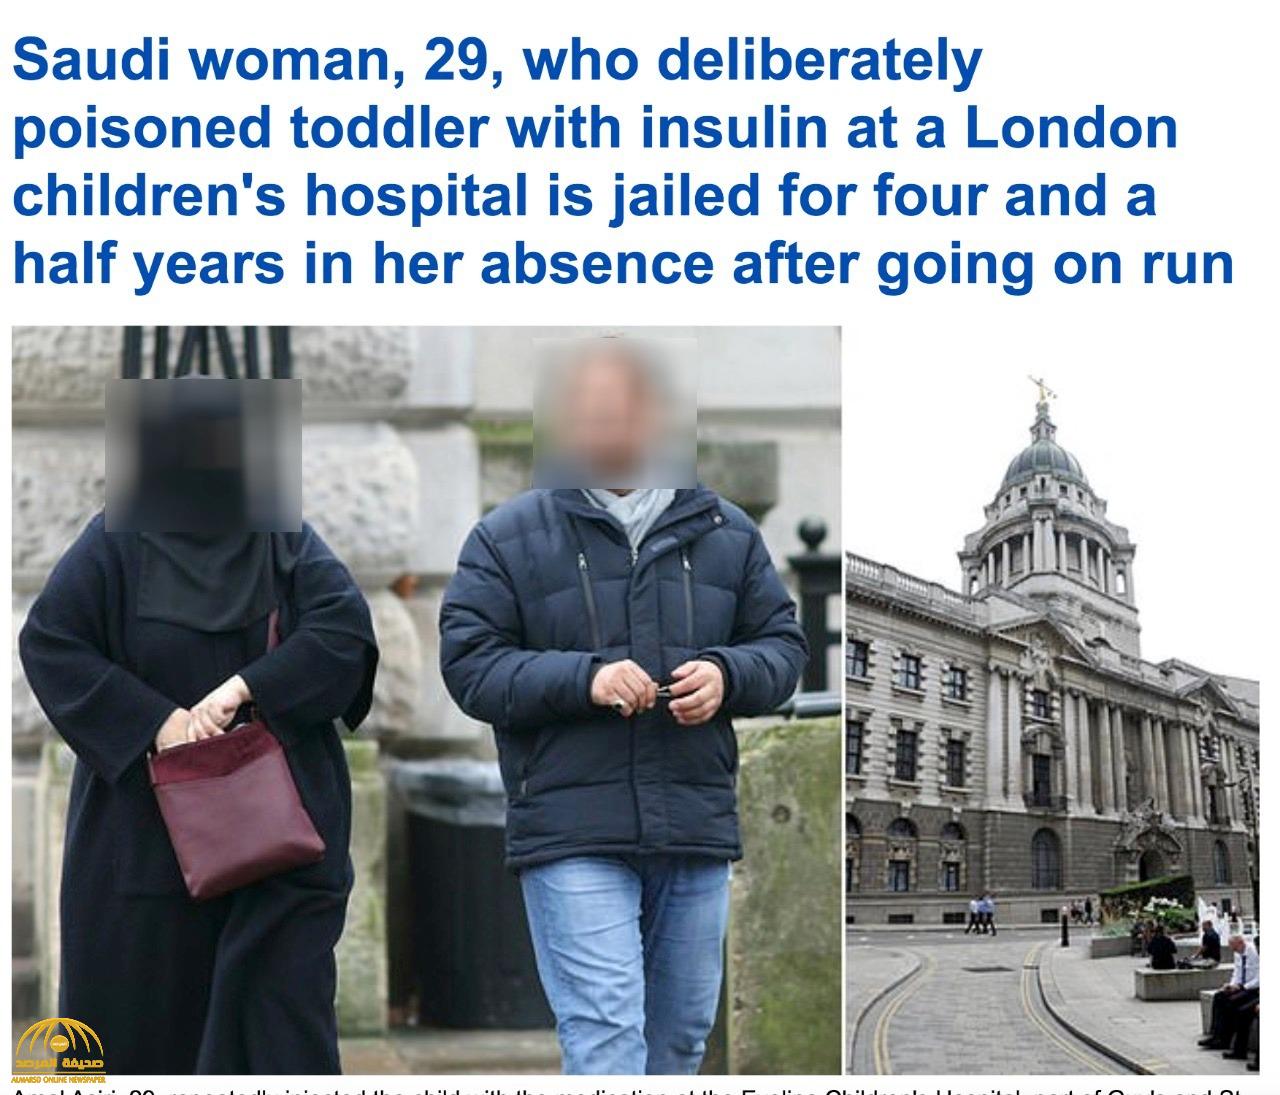 محكمة بريطانية  تقضي بحبس  امرأة سعودية 4 سنوات بعد إدانتها بتسمم طفل  في لندن!